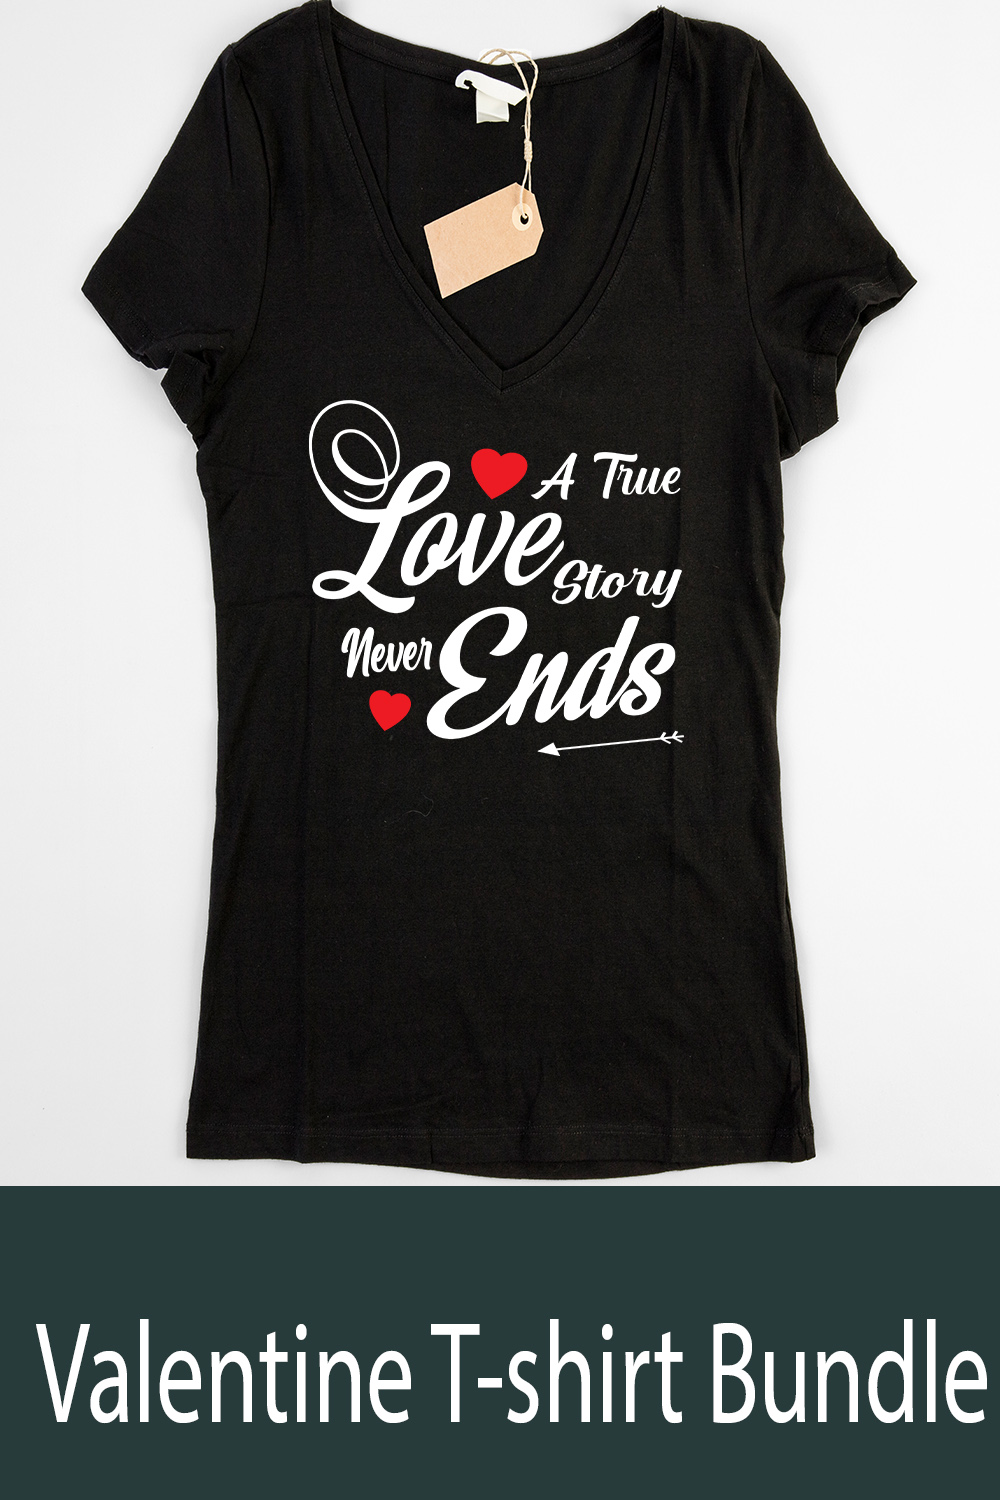 Valentine's T-shirt design bundle pinterest preview image.